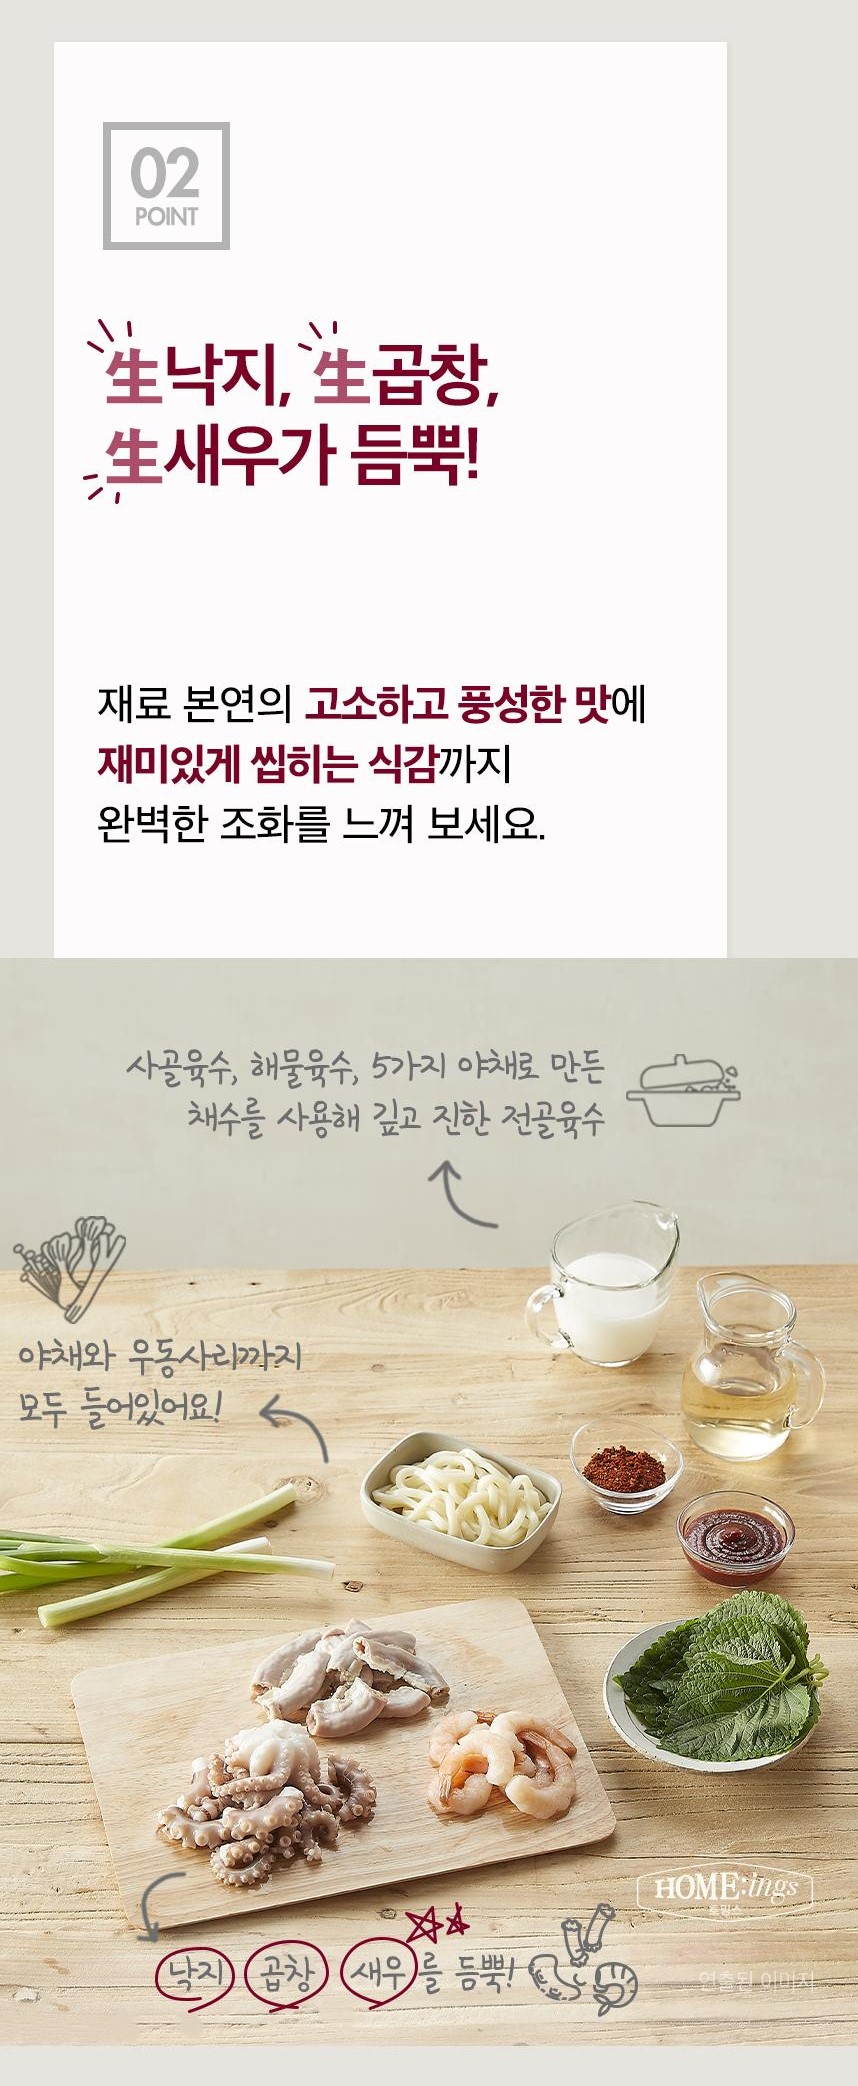 韓國食品-[CJO] Home:ings 章魚牛腸蝦子鍋 800g